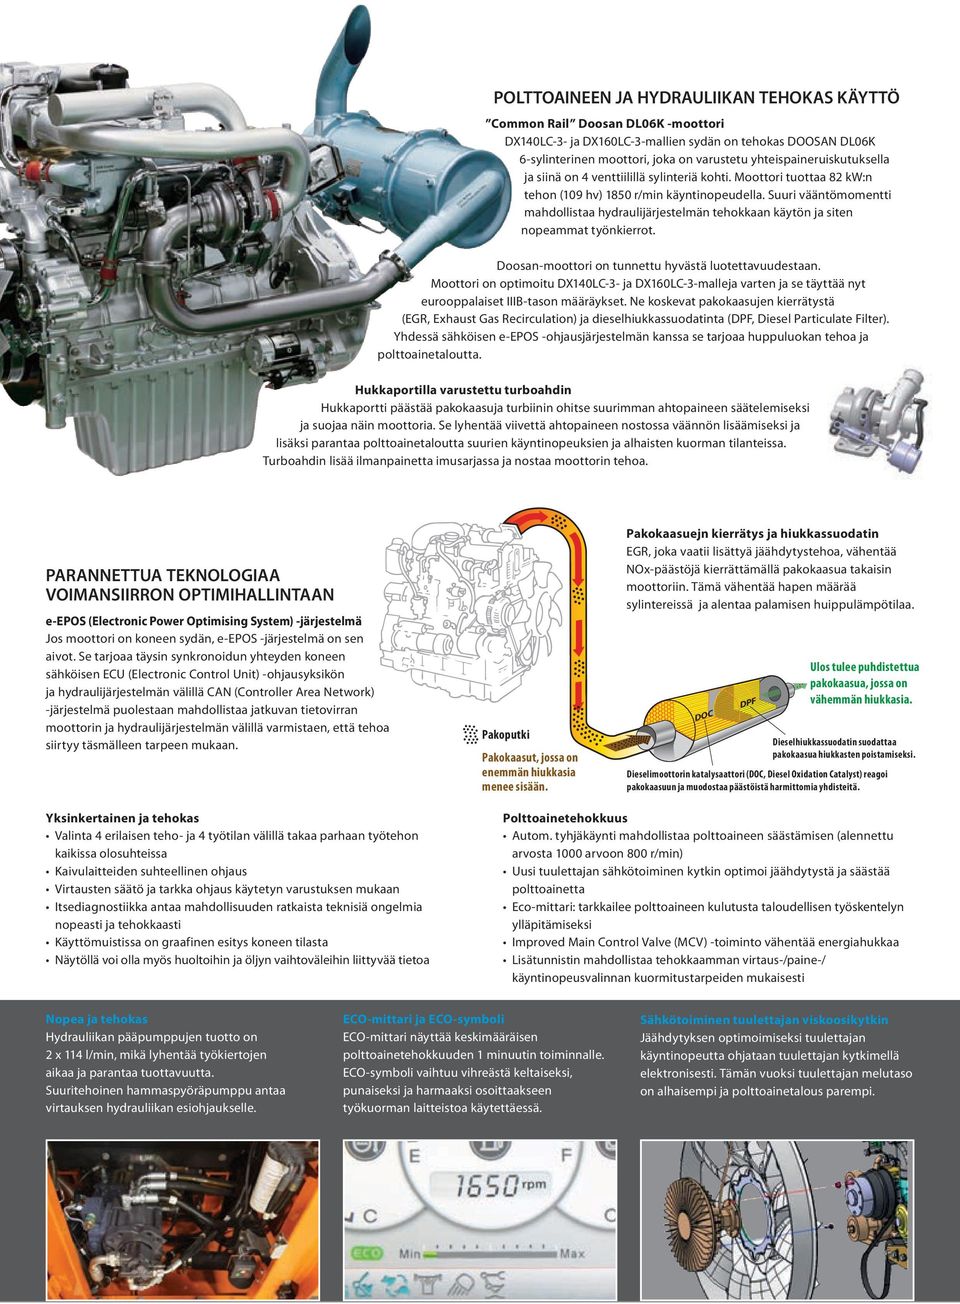 Suuri vääntömomentti mahdollistaa hydraulijärjestelmän tehokkaan käytön ja siten nopeammat työnkierrot. Doosan-moottori on tunnettu hyvästä luotettavuudestaan.